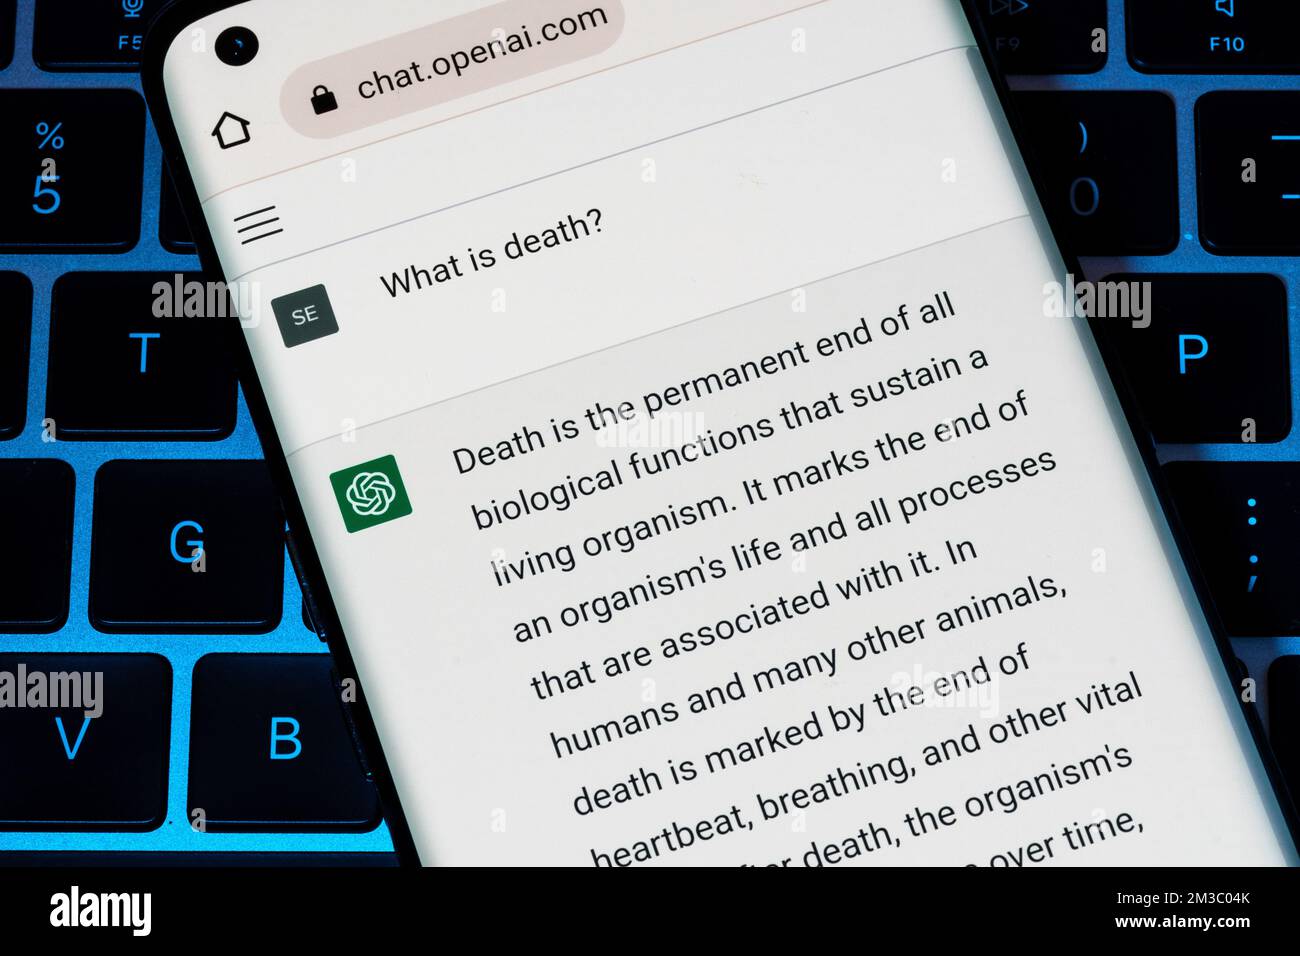 ÖFFNEN Sie den AI-ChatGPT-Chat-bot, der auf einem Smartphone auf einem Laptop angezeigt wird. AI-Chatbot antwortete auf die Frage nach dem Tod. Stafford, Vereinigtes Königreich, Dezember 13, Stockfoto